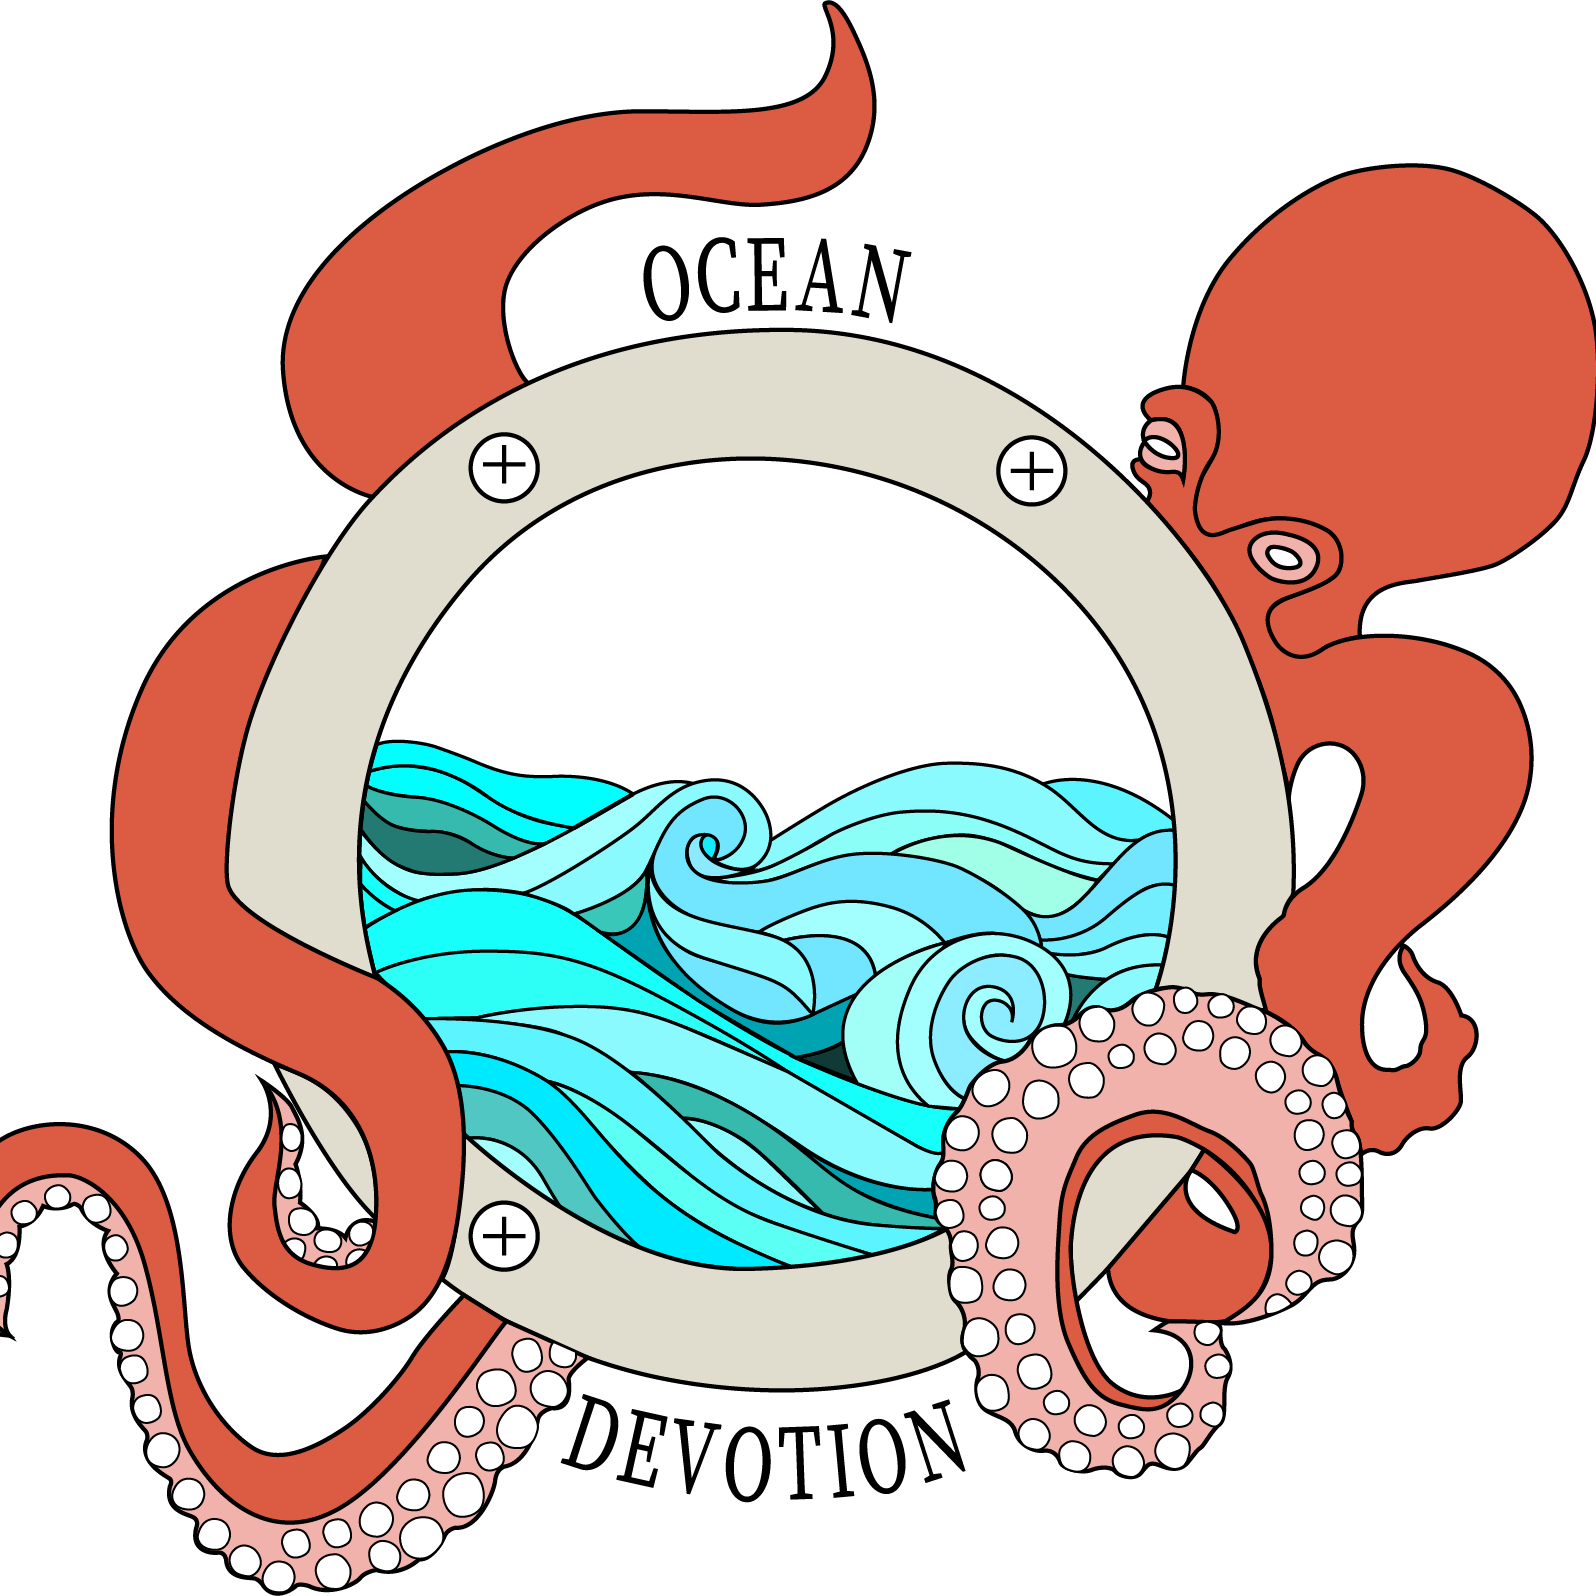 Ocean Devotion